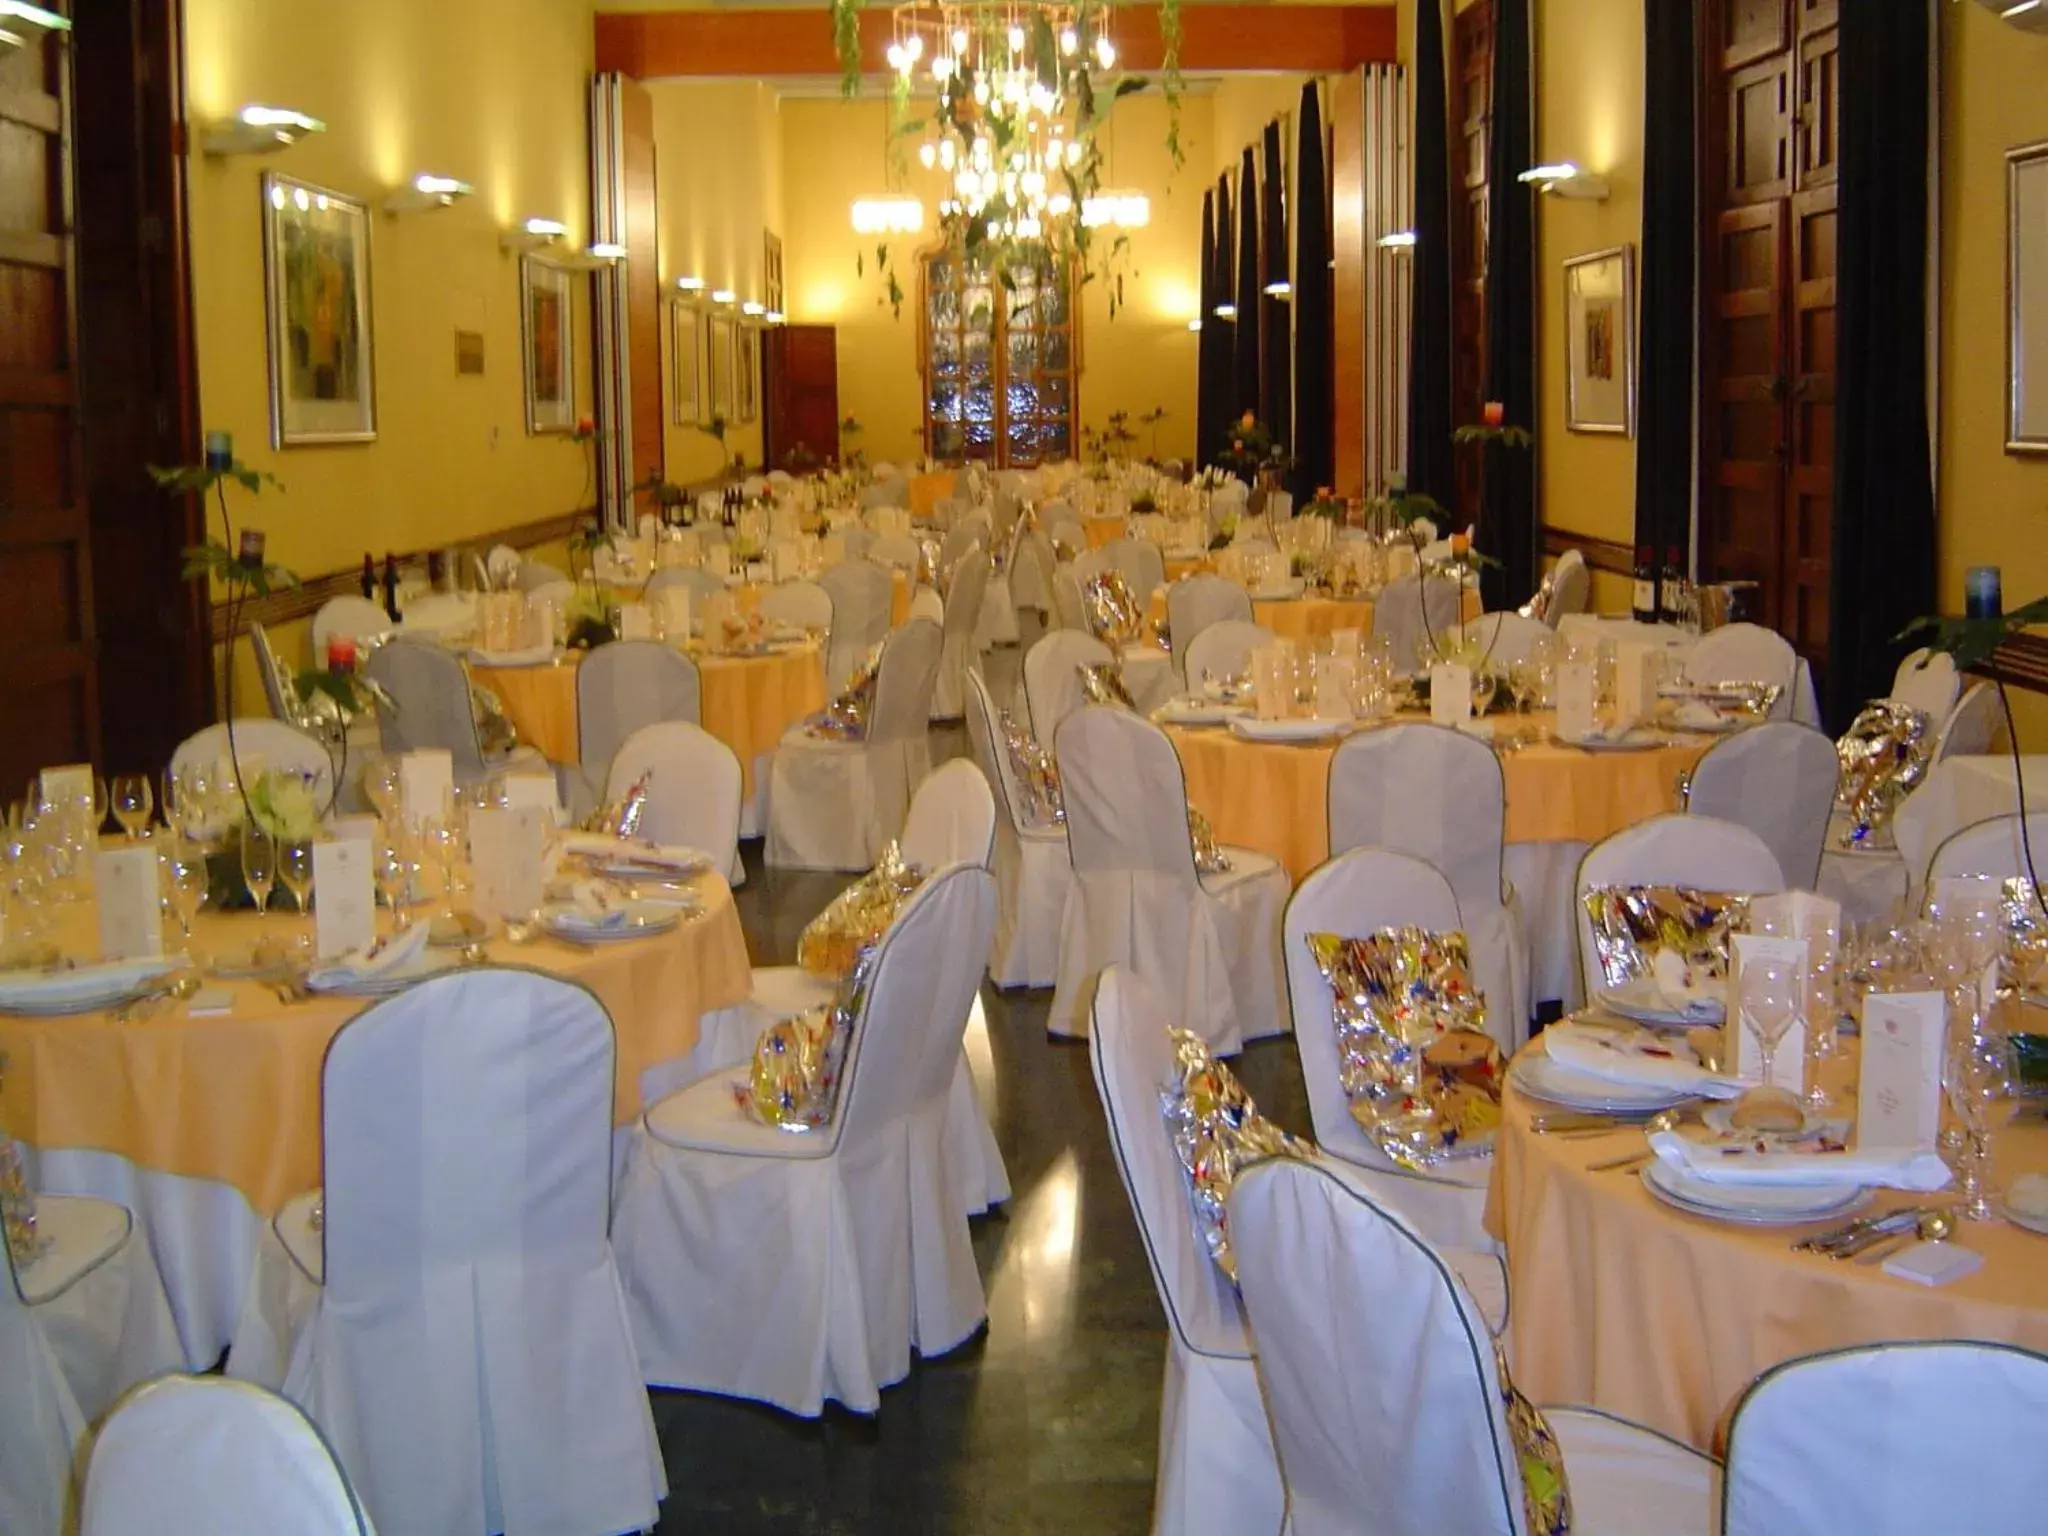 Banquet/Function facilities, Banquet Facilities in Sercotel Palacio de Tudemir